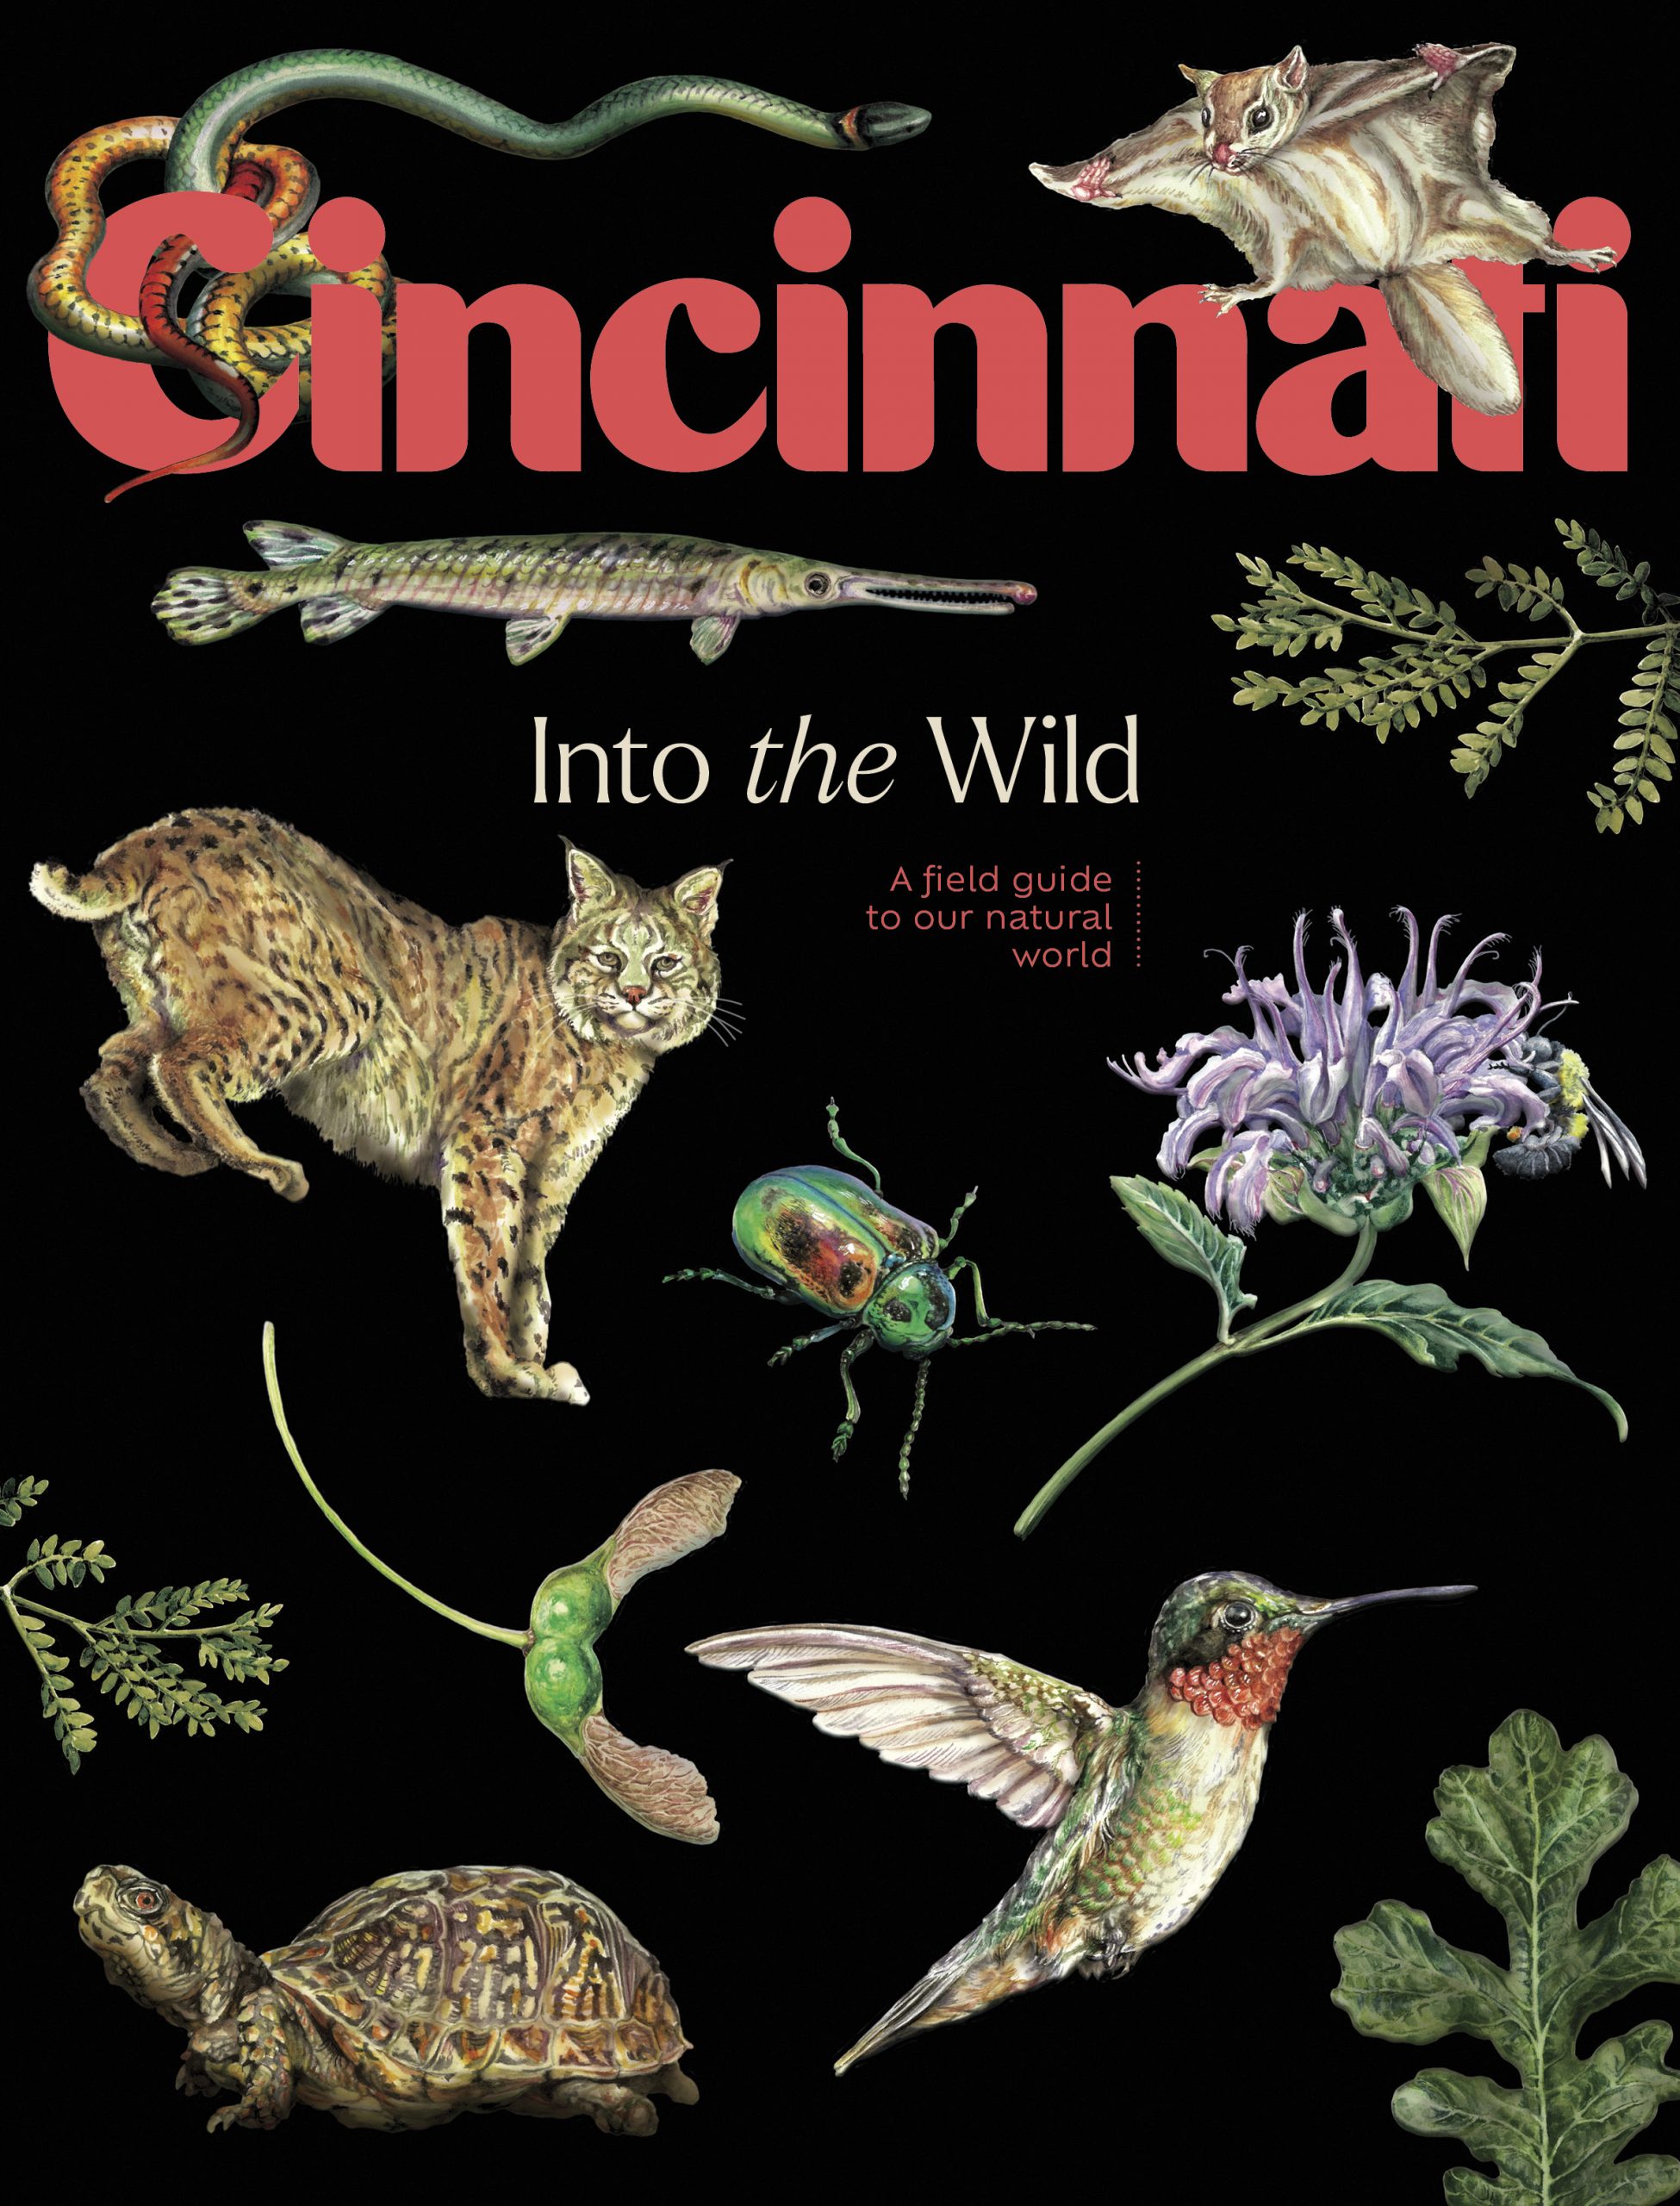 Get Cincinnati Magazine delivered to your doorstep!